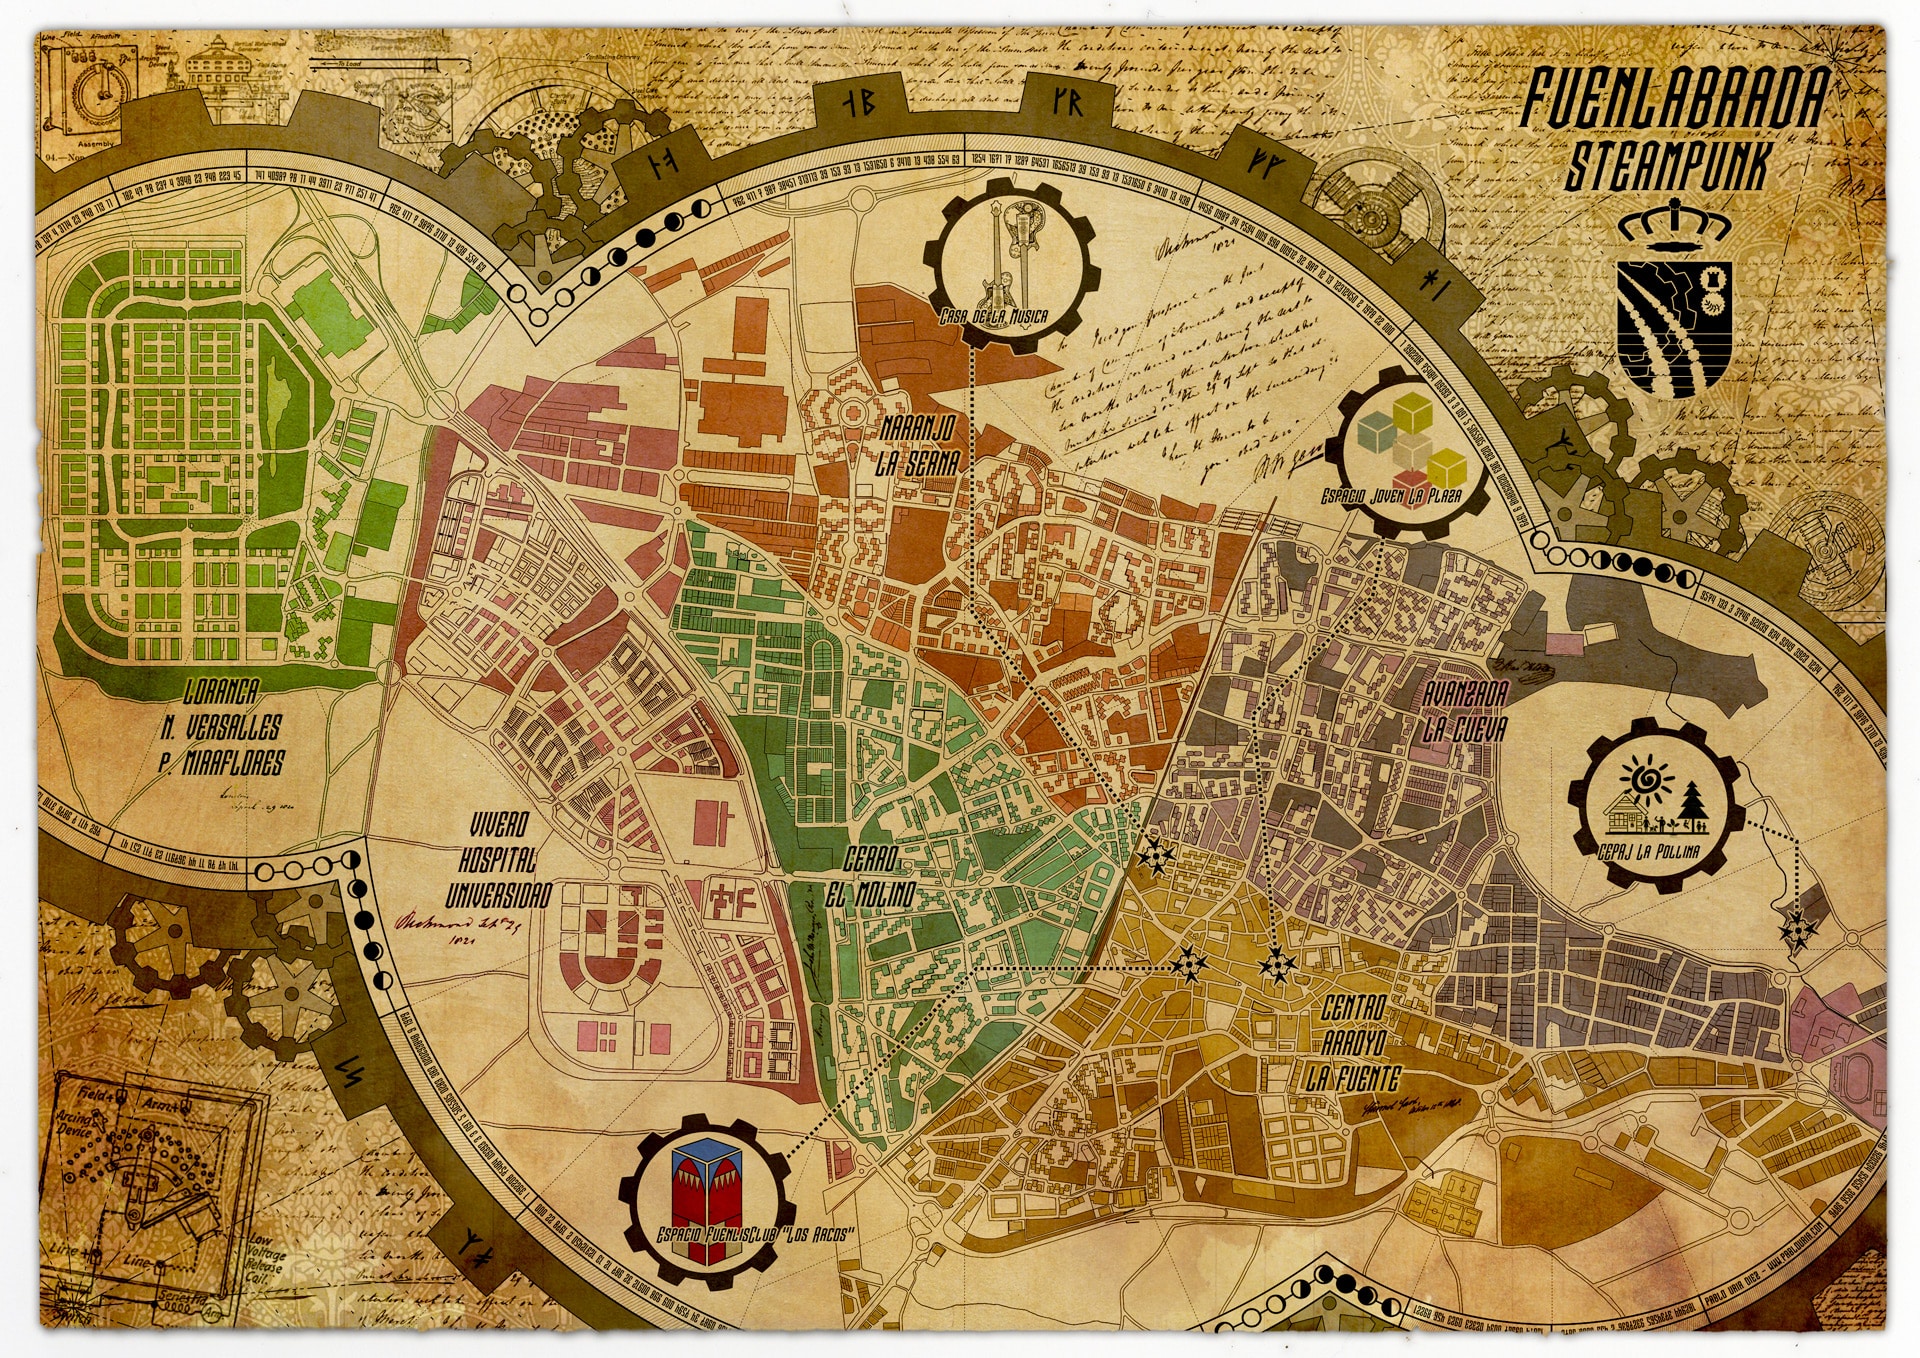 mapa-fuenlabrada-steampunk-pablo-uria-ilustrador-editorial